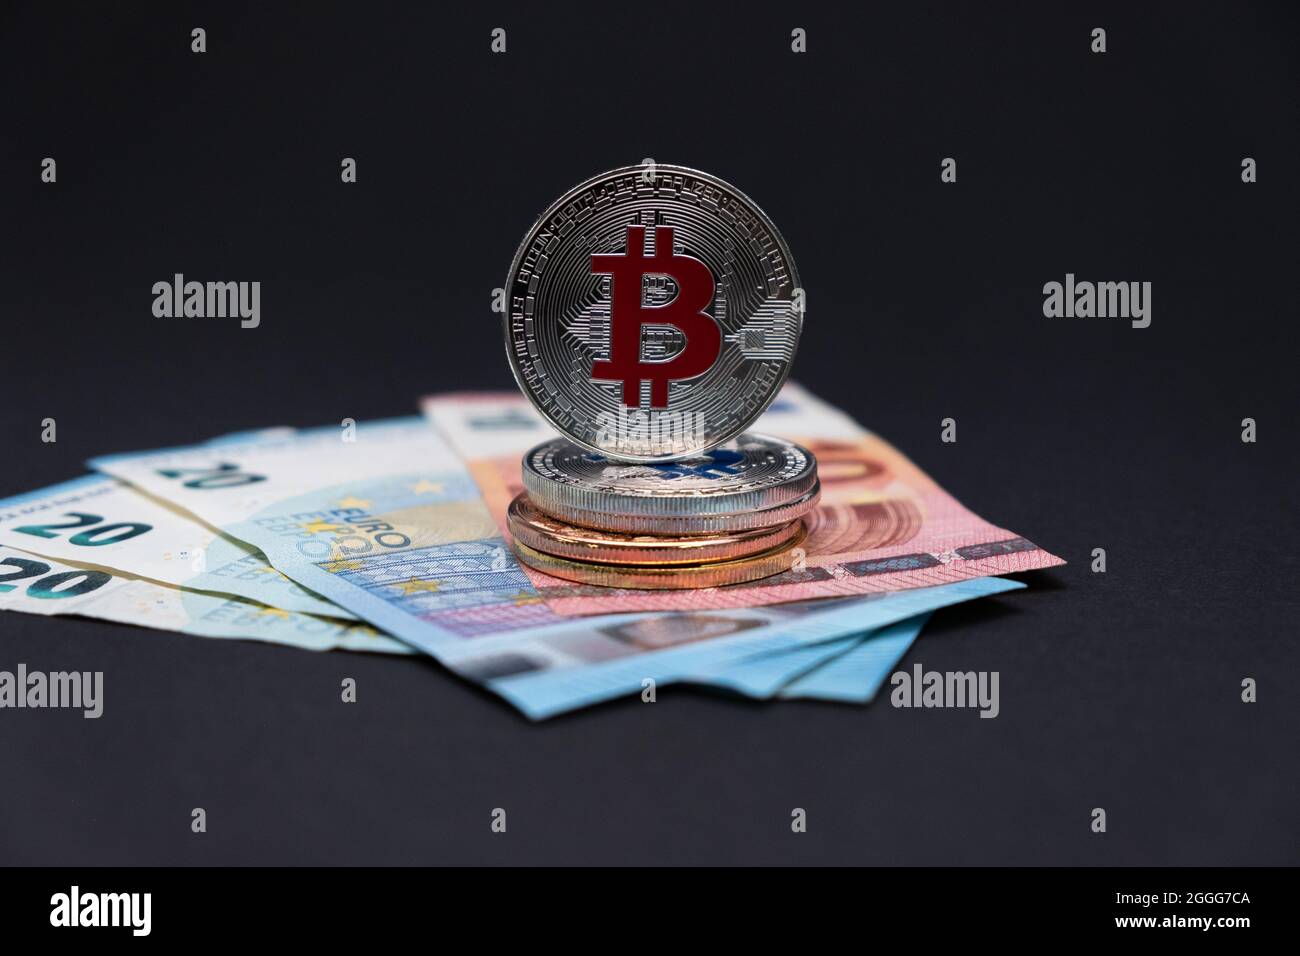 Bitcoins con el símbolo rojo encima de los billetes de banco de 20 y 10 euros. Bitcoins en billetes de diez y veinte euros sobre fondo oscuro. Foto de stock